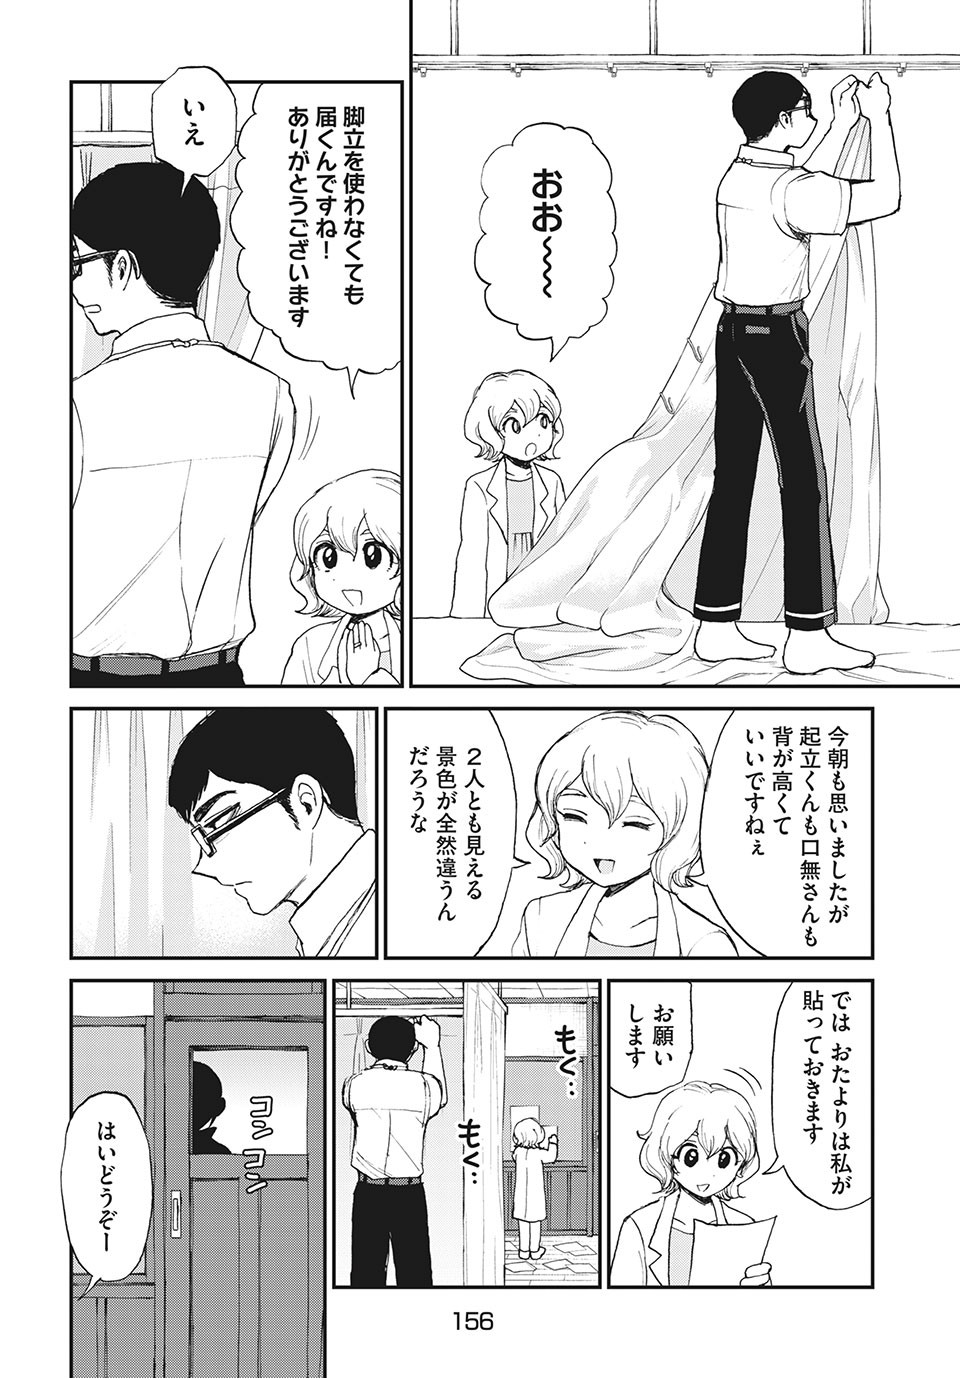 Arakure Ojousama Wa MonMon Shiteiru - Chapter 19.2 - Page 2